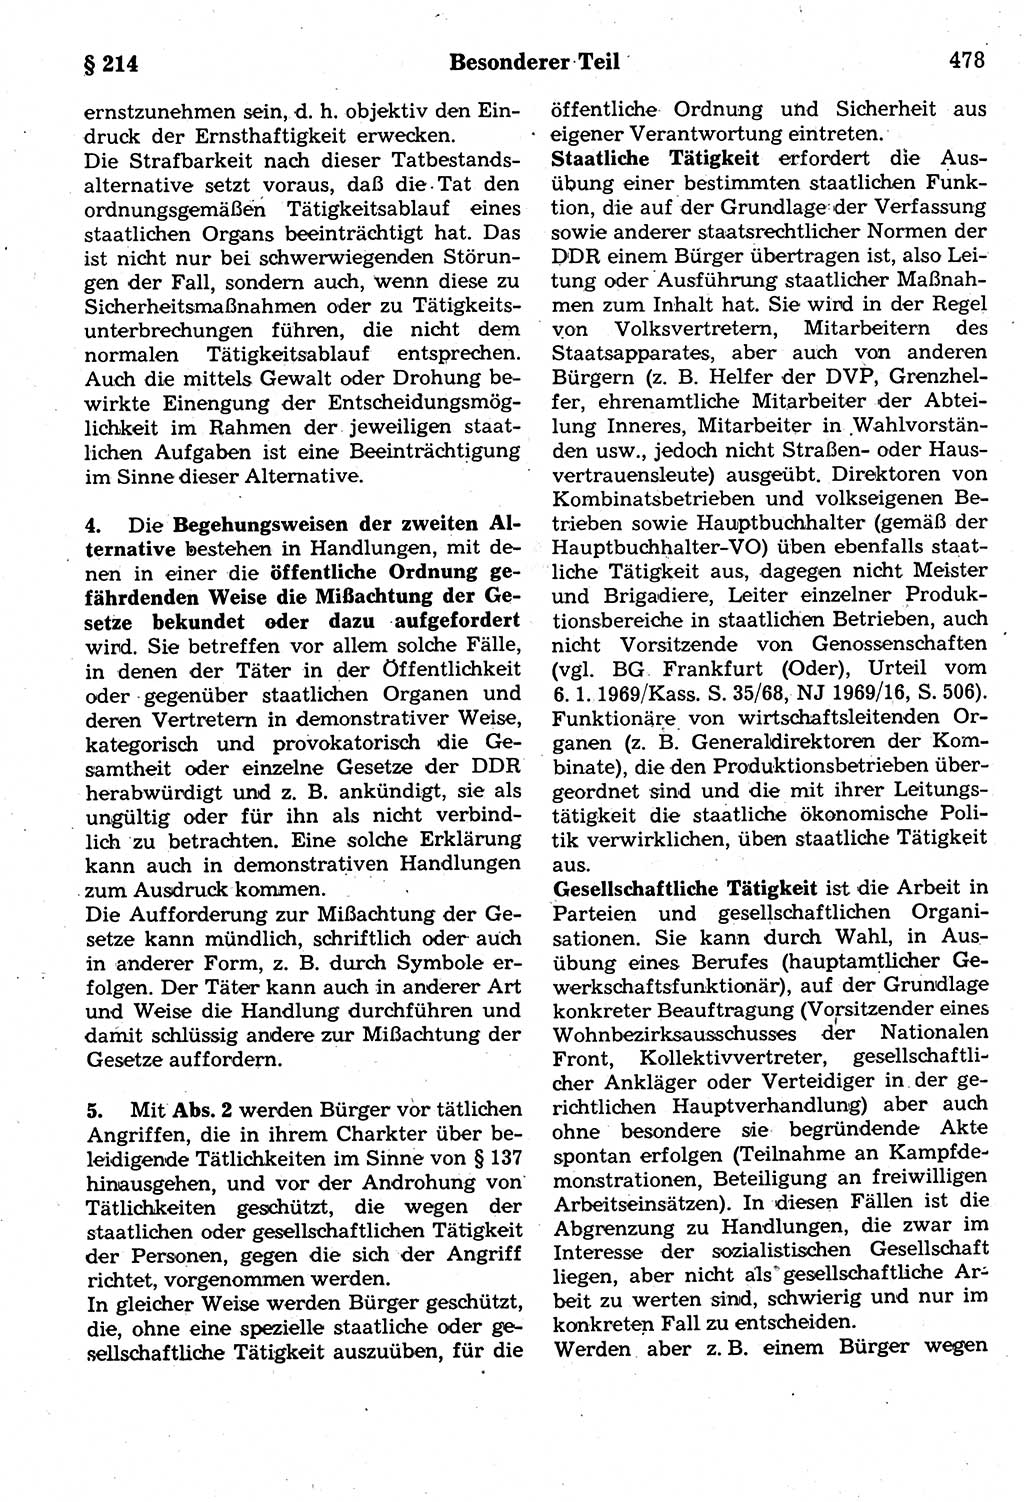 Strafrecht der Deutschen Demokratischen Republik (DDR), Kommentar zum Strafgesetzbuch (StGB) 1987, Seite 478 (Strafr. DDR Komm. StGB 1987, S. 478)